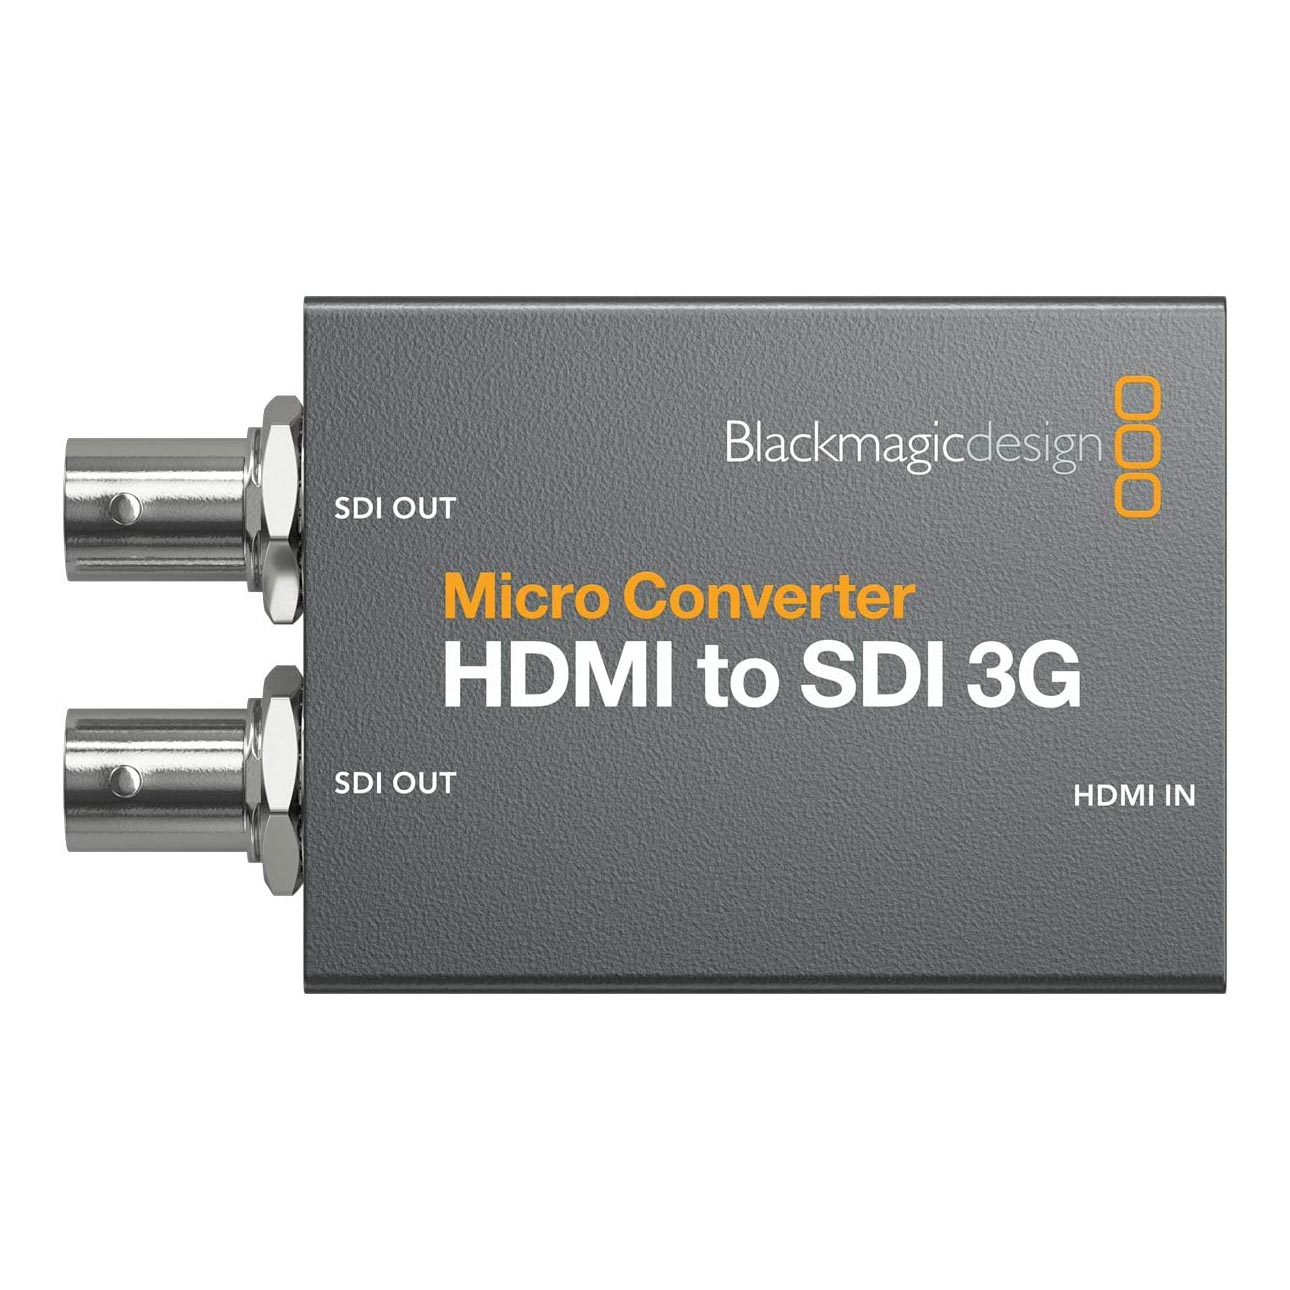 Конвертер Blackmagic Design Micro Converter HDMI to SDI 3G конвертер blackmagic design micro converter sdi to hdmi 3g